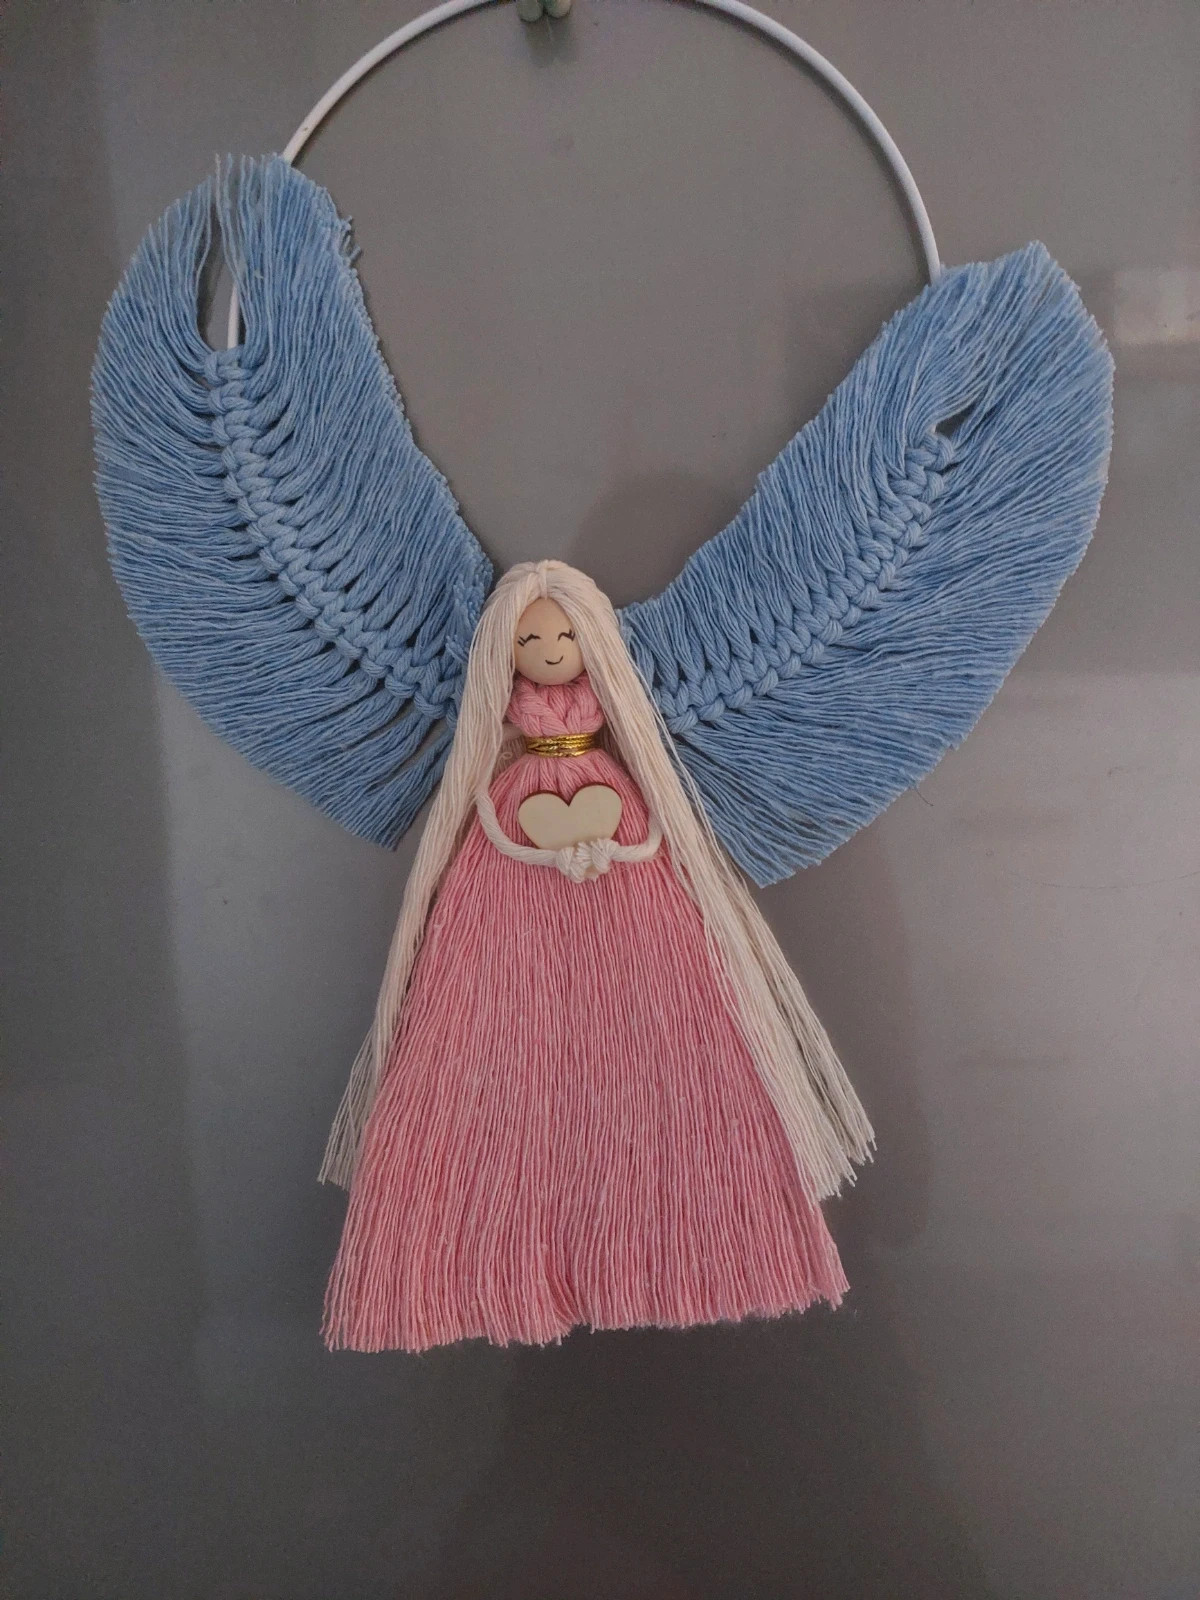 Anioł makrama